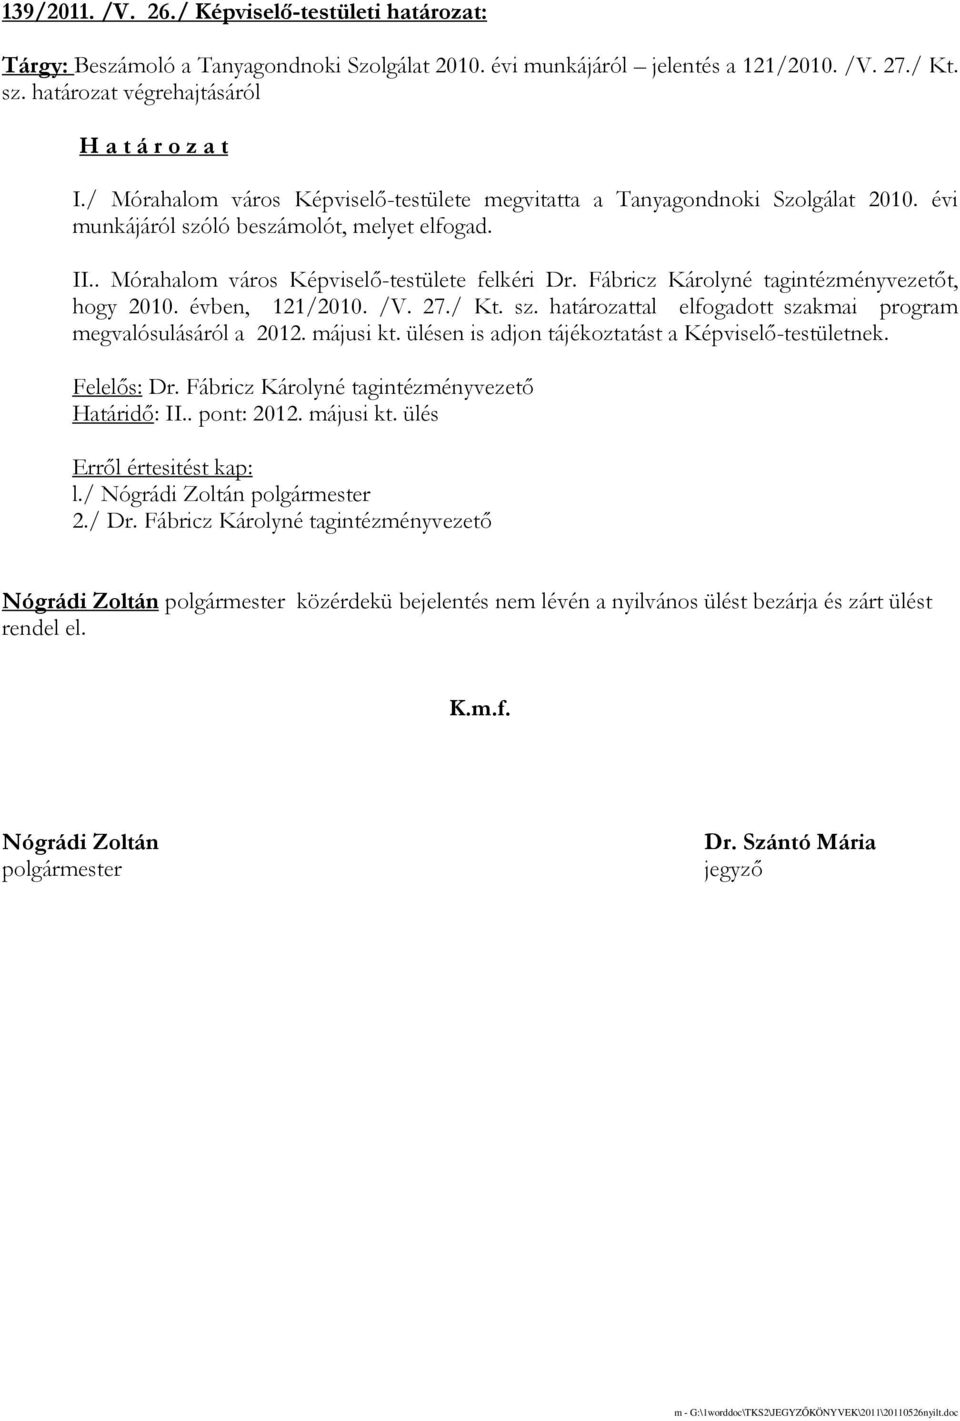 Fábricz Károlyné tagintézményvezetıt, hogy 2010. évben, 121/2010. /V. 27./ Kt. sz. határozattal elfogadott szakmai program megvalósulásáról a 2012. májusi kt.